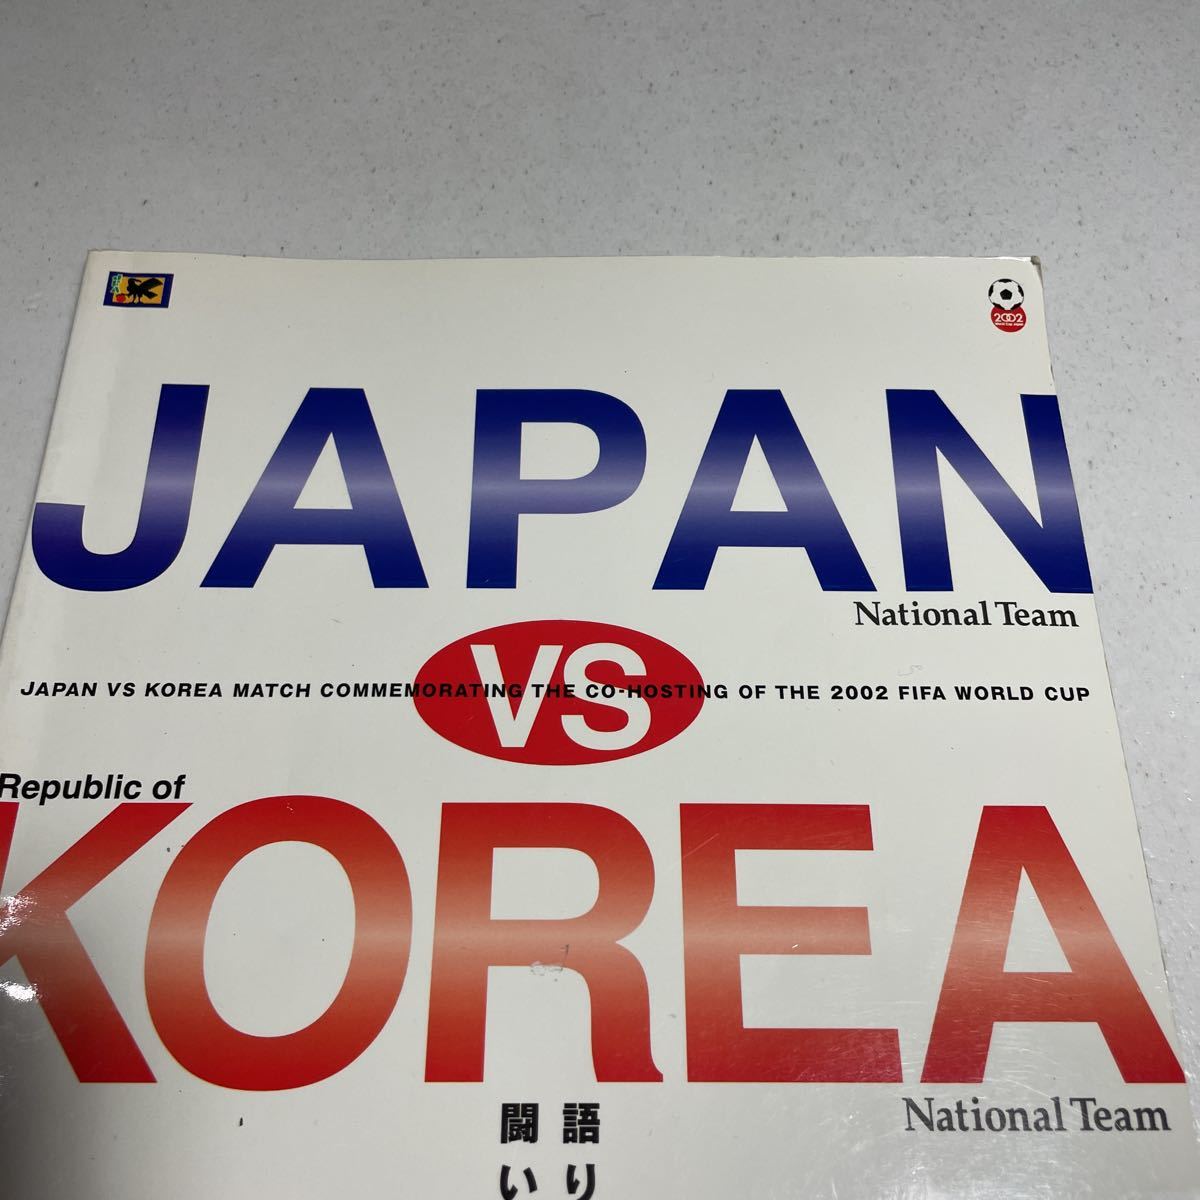 2002 год FIFA World Cup Япония * Корея сотрудничество открытие память соревнование Япония vs Корея проспект Japan korea